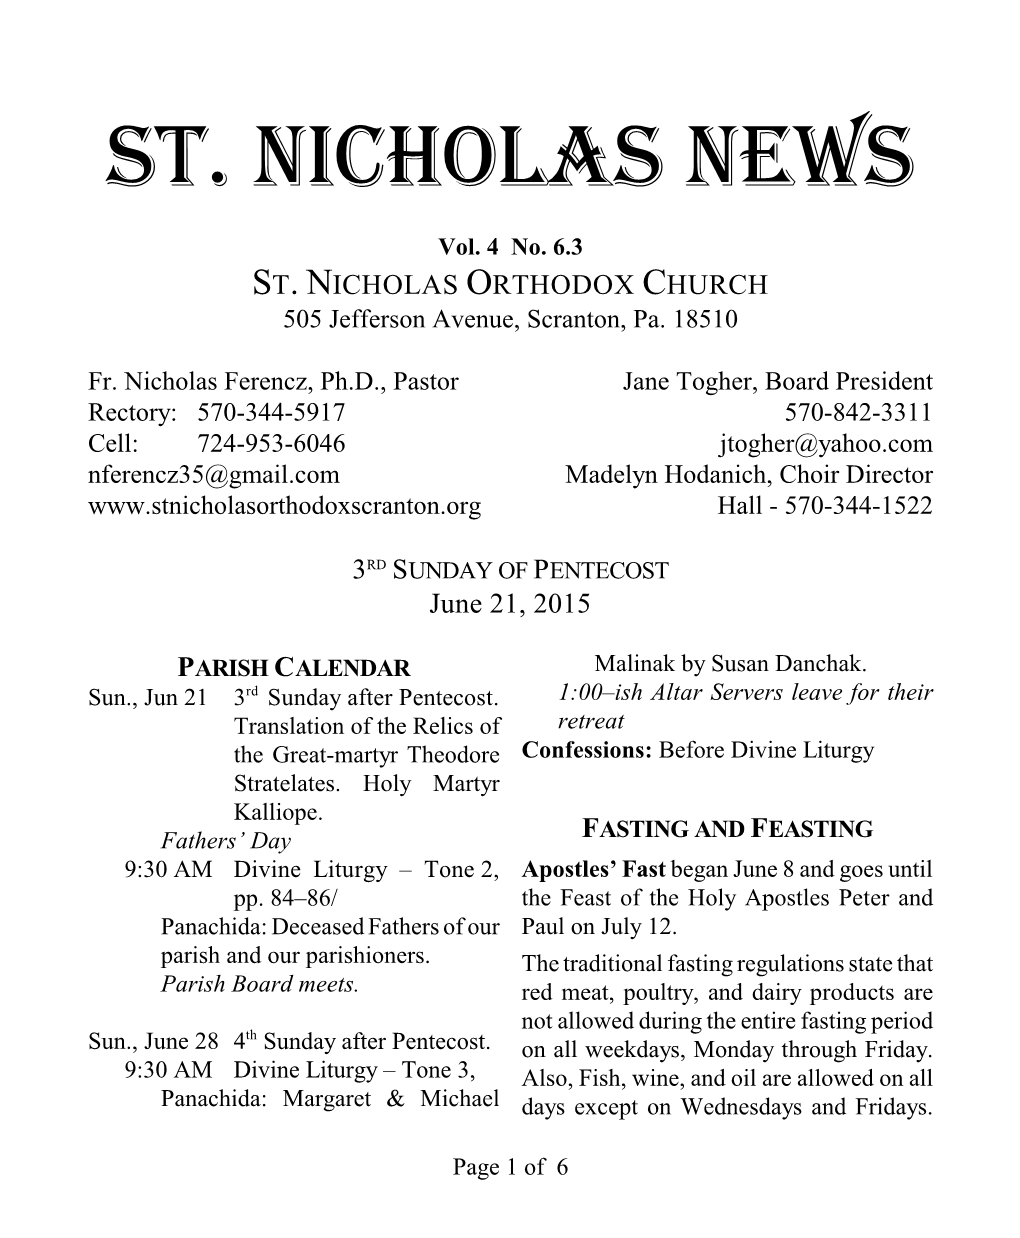 St. Nicholas News